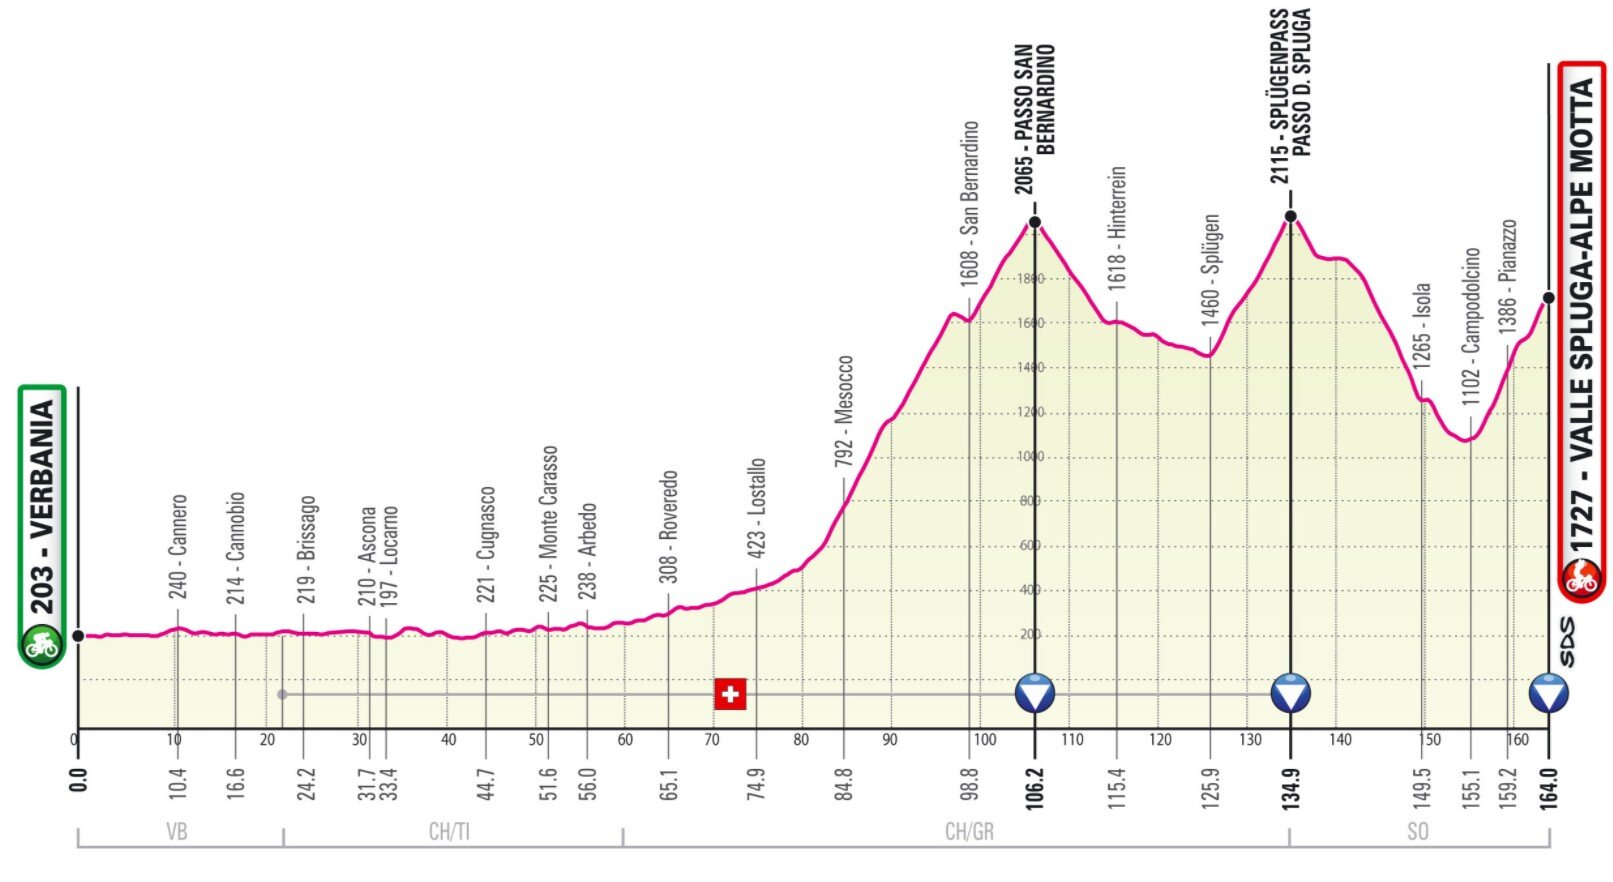 Stage 20 Giro Italia 2021